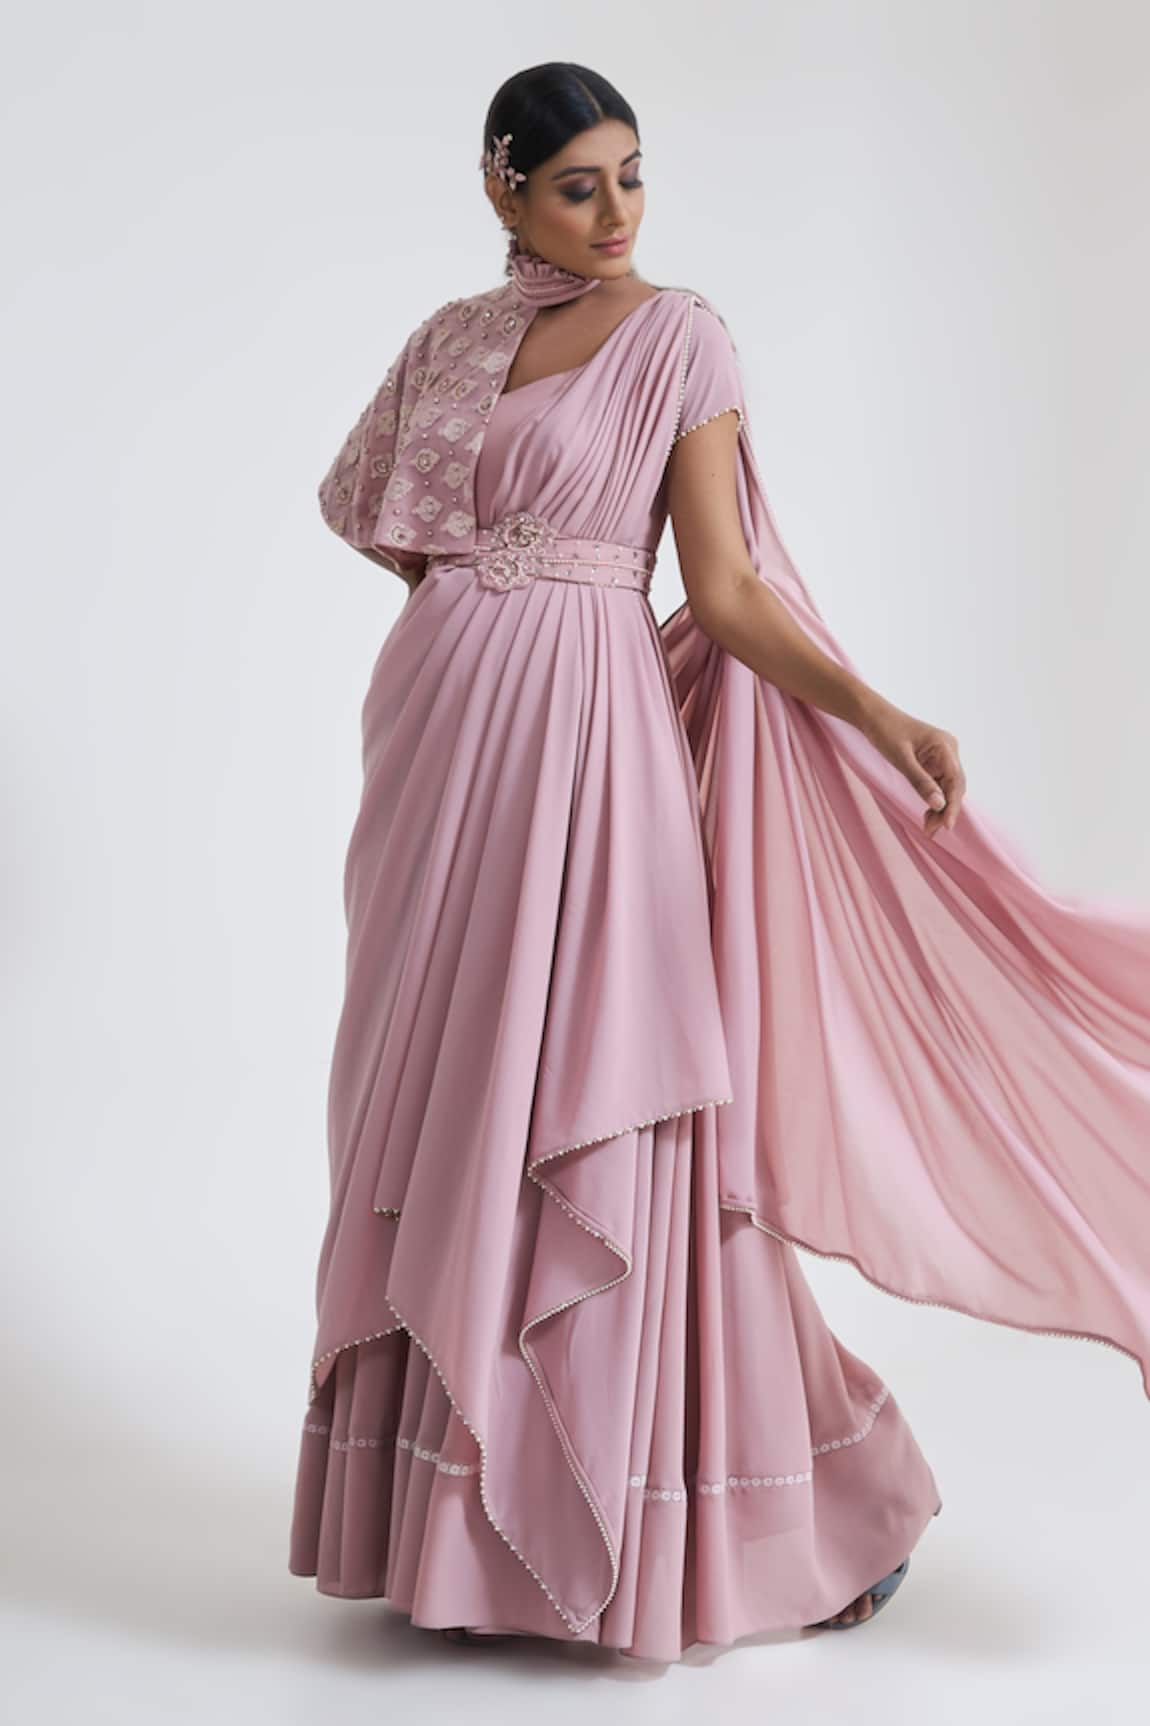 490 Old saree dress ideas in 2023  saree dress long dress design designer  dresses indian